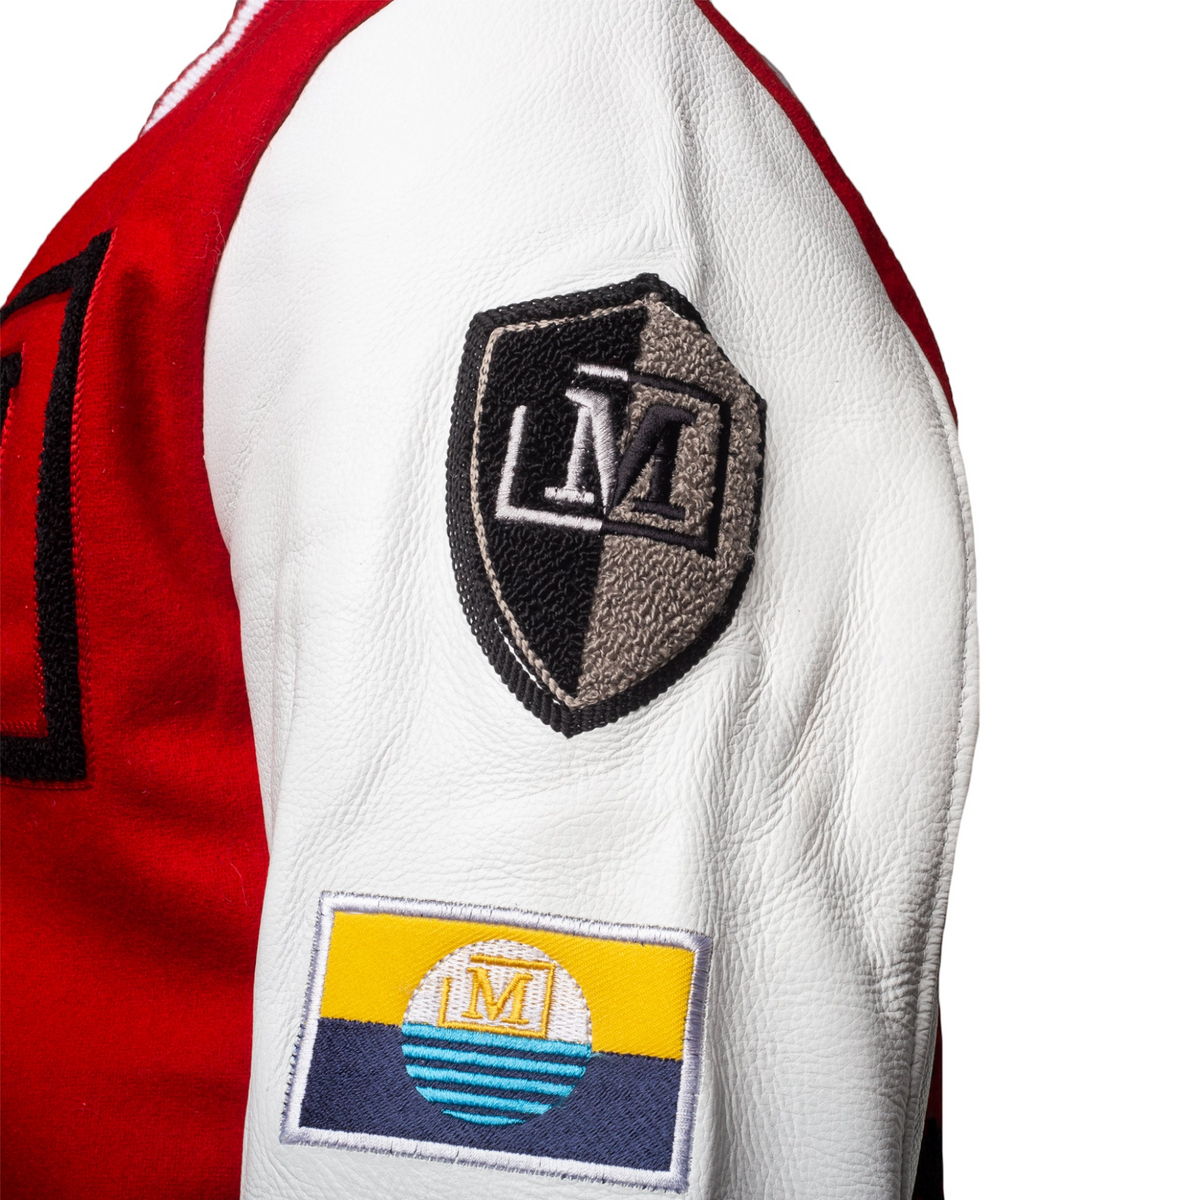 MDB Brand Women's Varsity Jacket - Red White